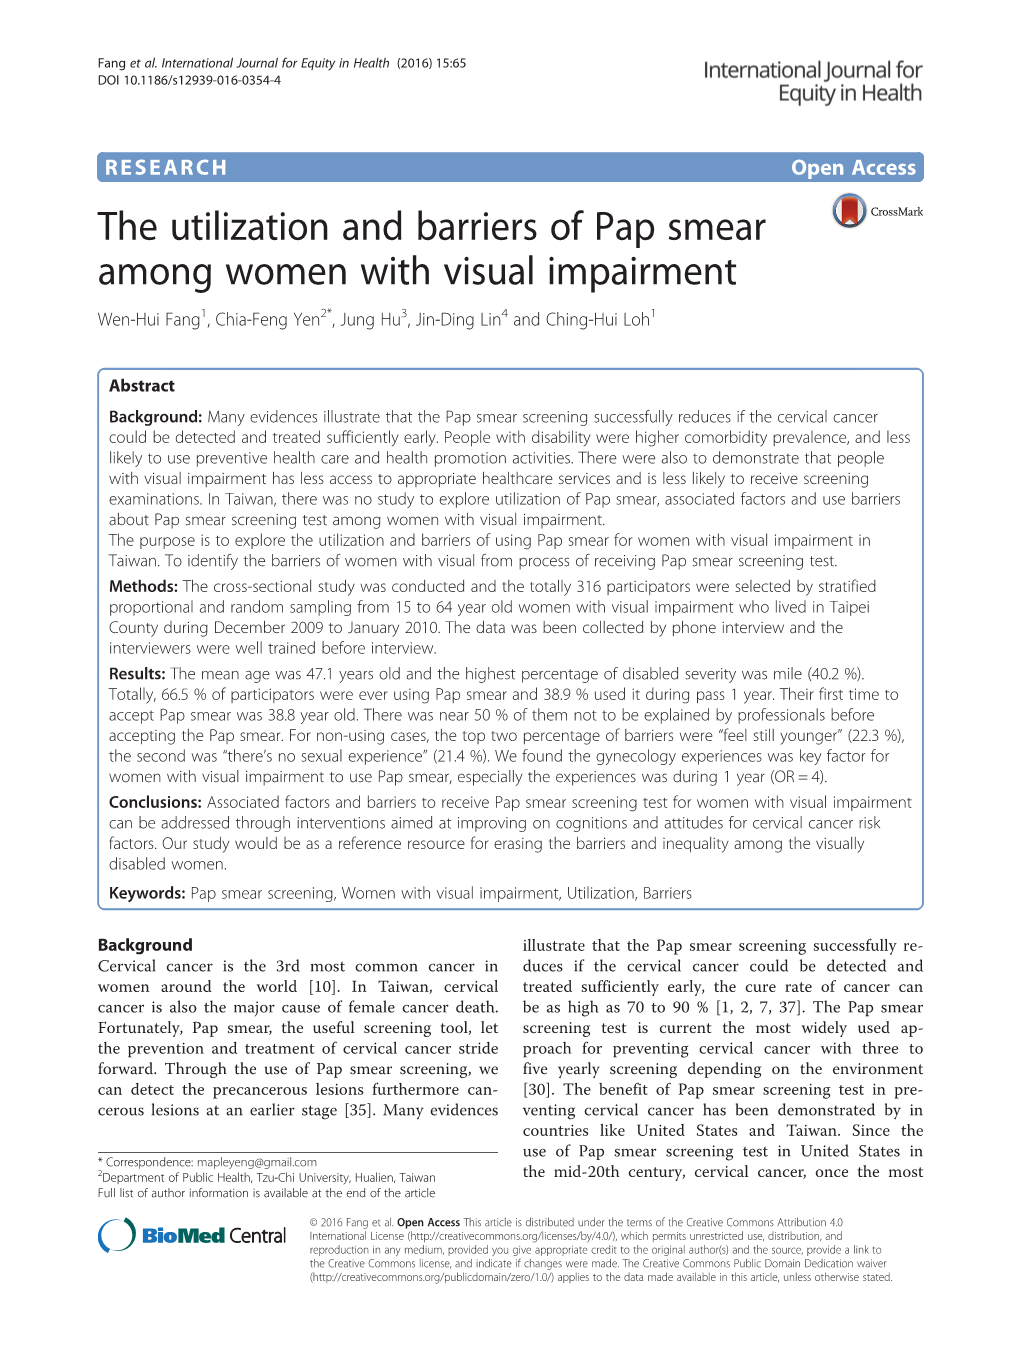 The Utilization and Barriers of Pap Smear Among Women with Visual Impairment Wen-Hui Fang1, Chia-Feng Yen2*, Jung Hu3, Jin-Ding Lin4 and Ching-Hui Loh1